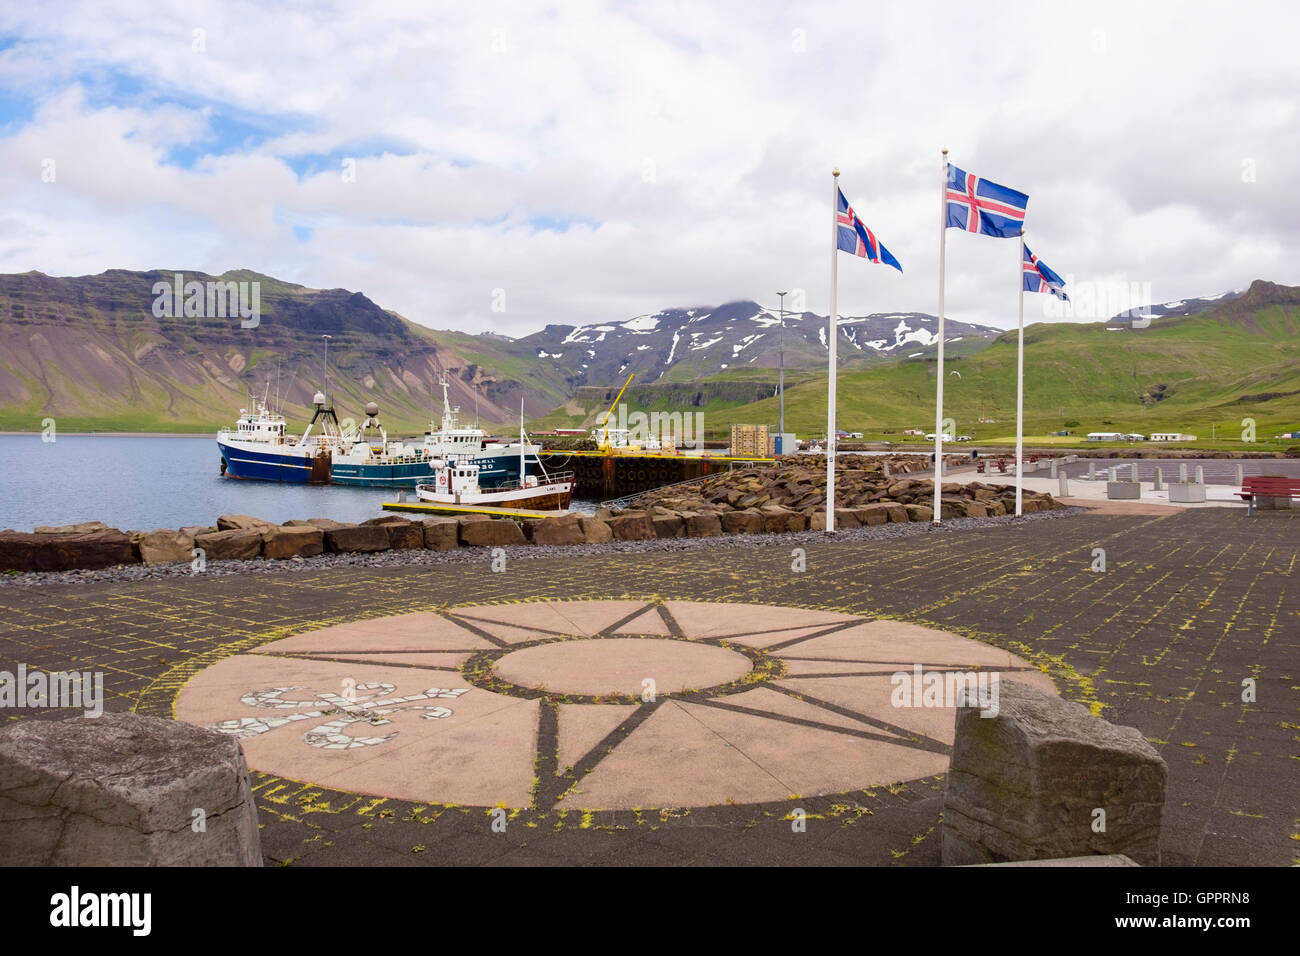 Drapeaux islandais sur le quai avec des bateaux de pêche amarrés dans le port. Grundarfjordur, Péninsule de Snæfellsnes, l'Islande Banque D'Images